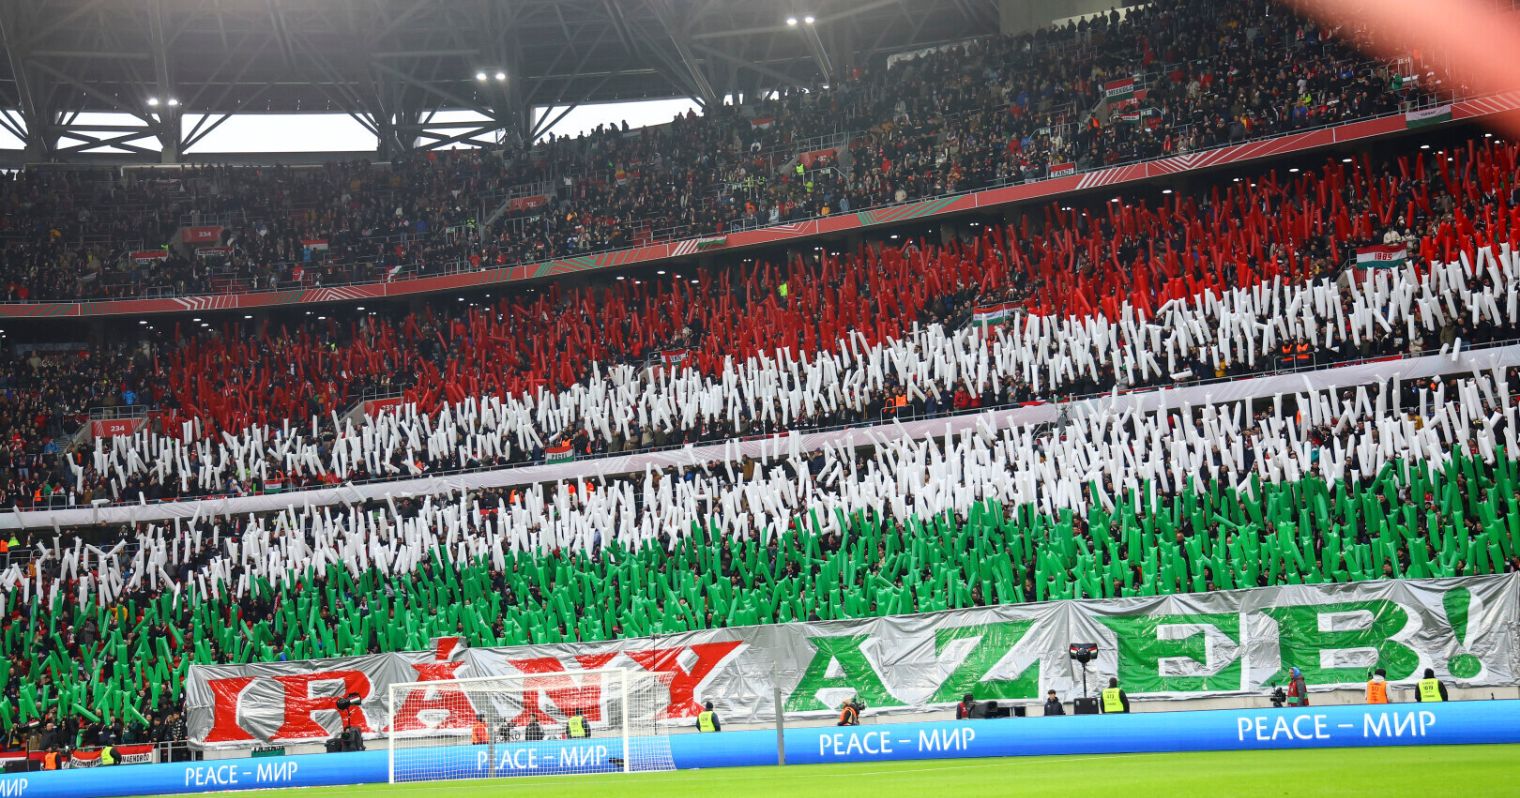 Magyarország-Montenegró meccs eleji szorkolói koreográfia, elöl "irány az eb" felirat, mögötte a feltartott rudakból magyar zászló.